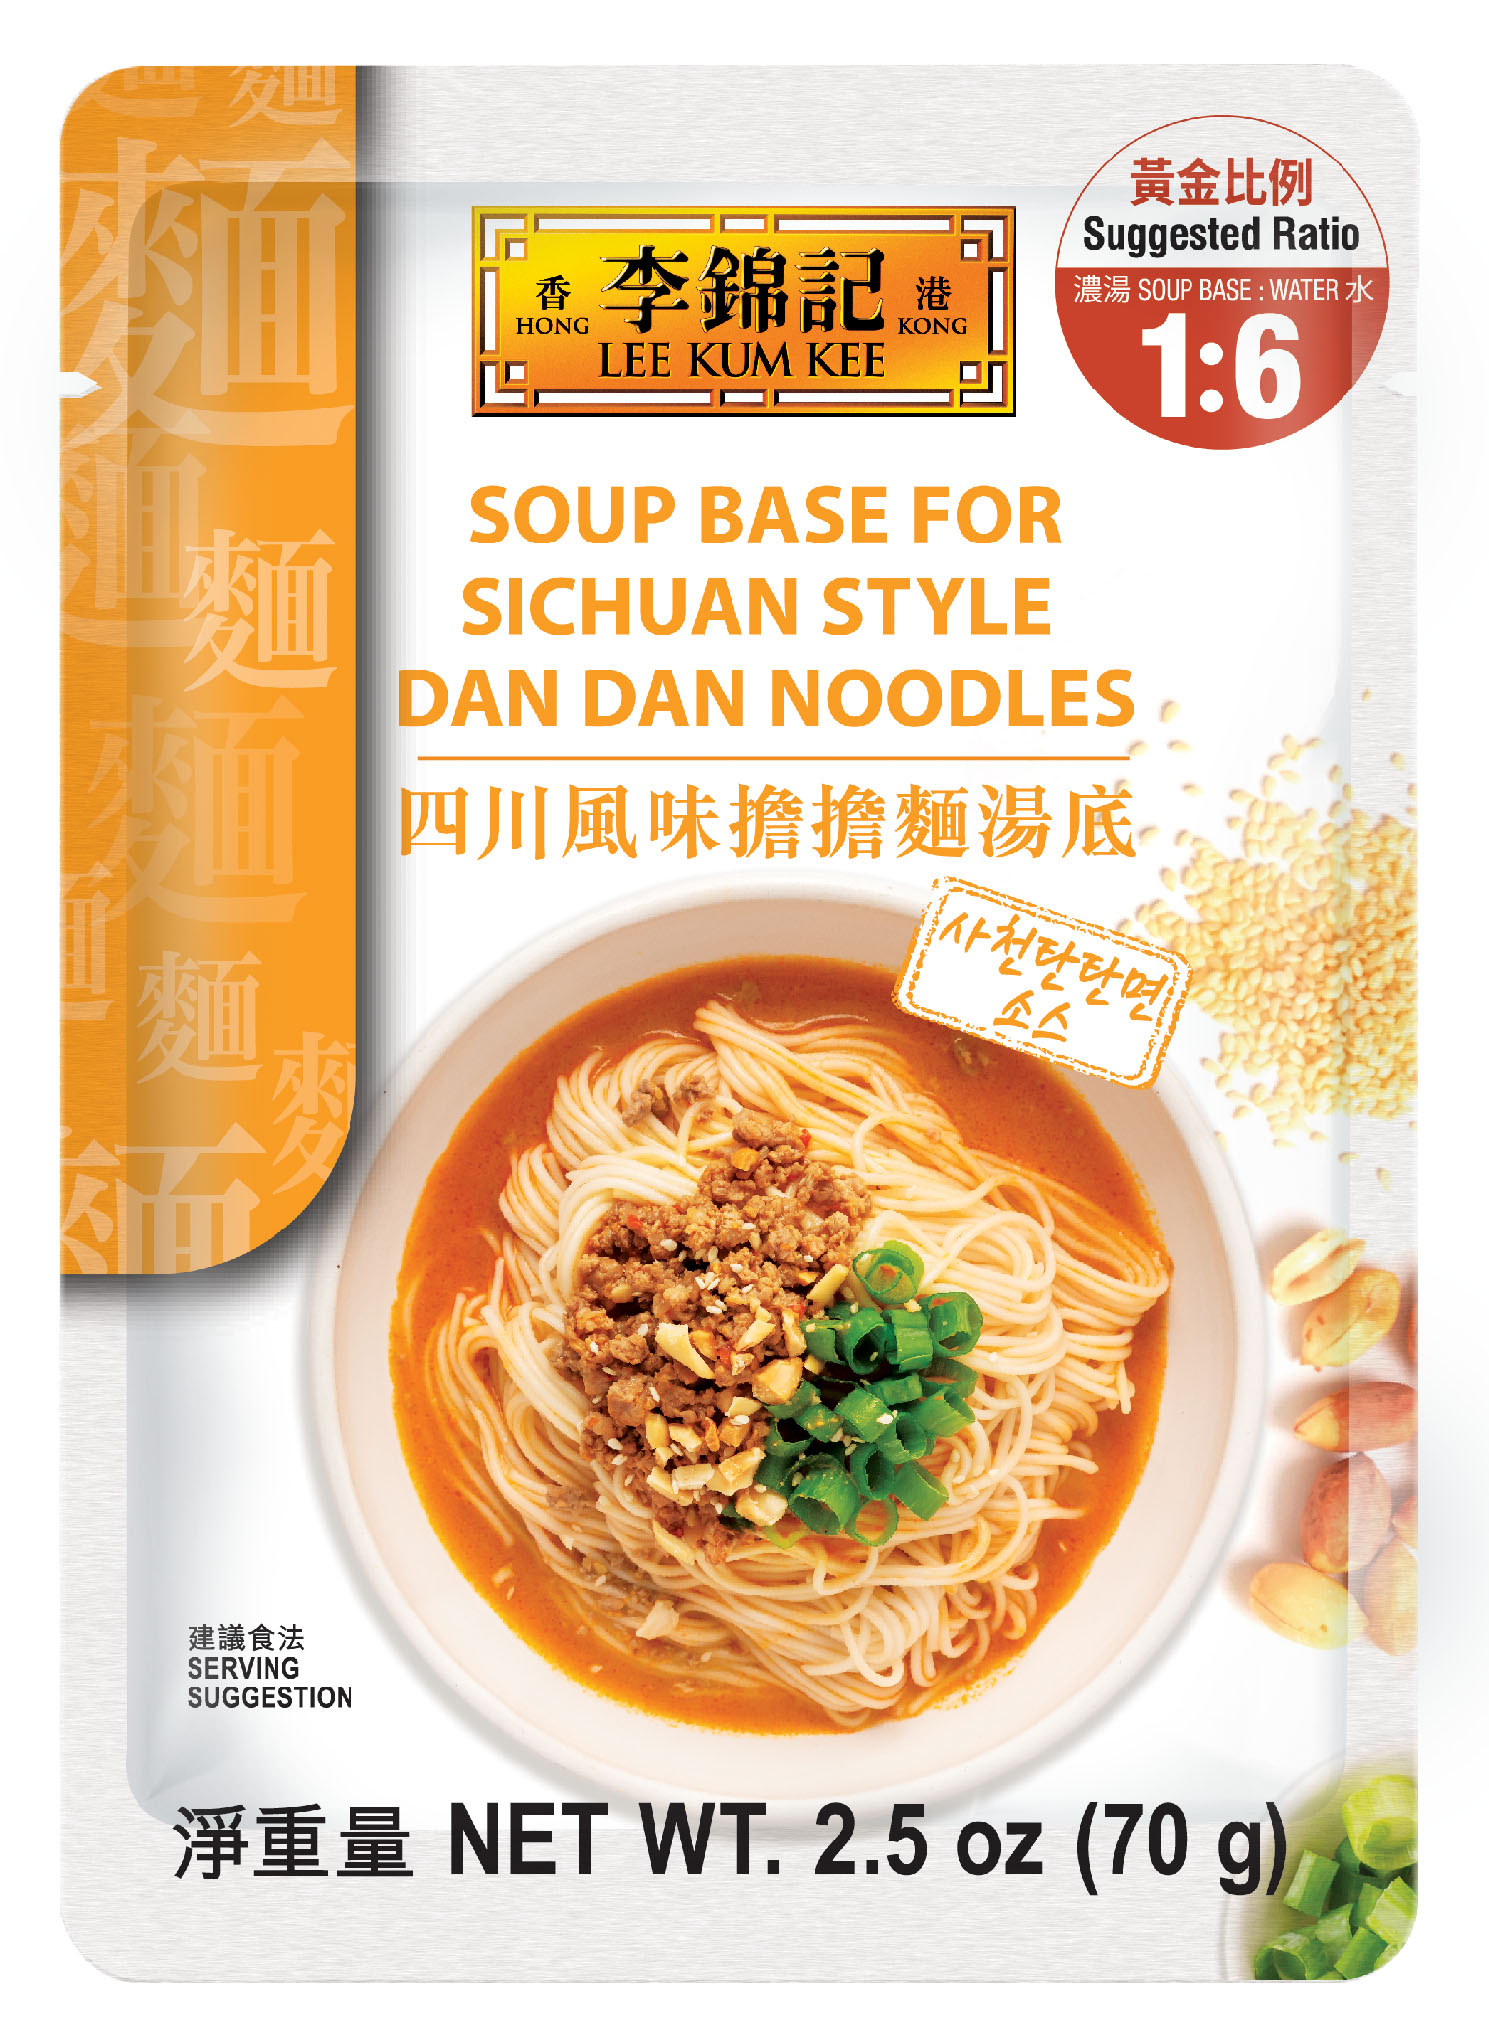 Soup Base for Sichuan Style Dan Dan Noodles 2.5 oz (70 g), Soup Pack